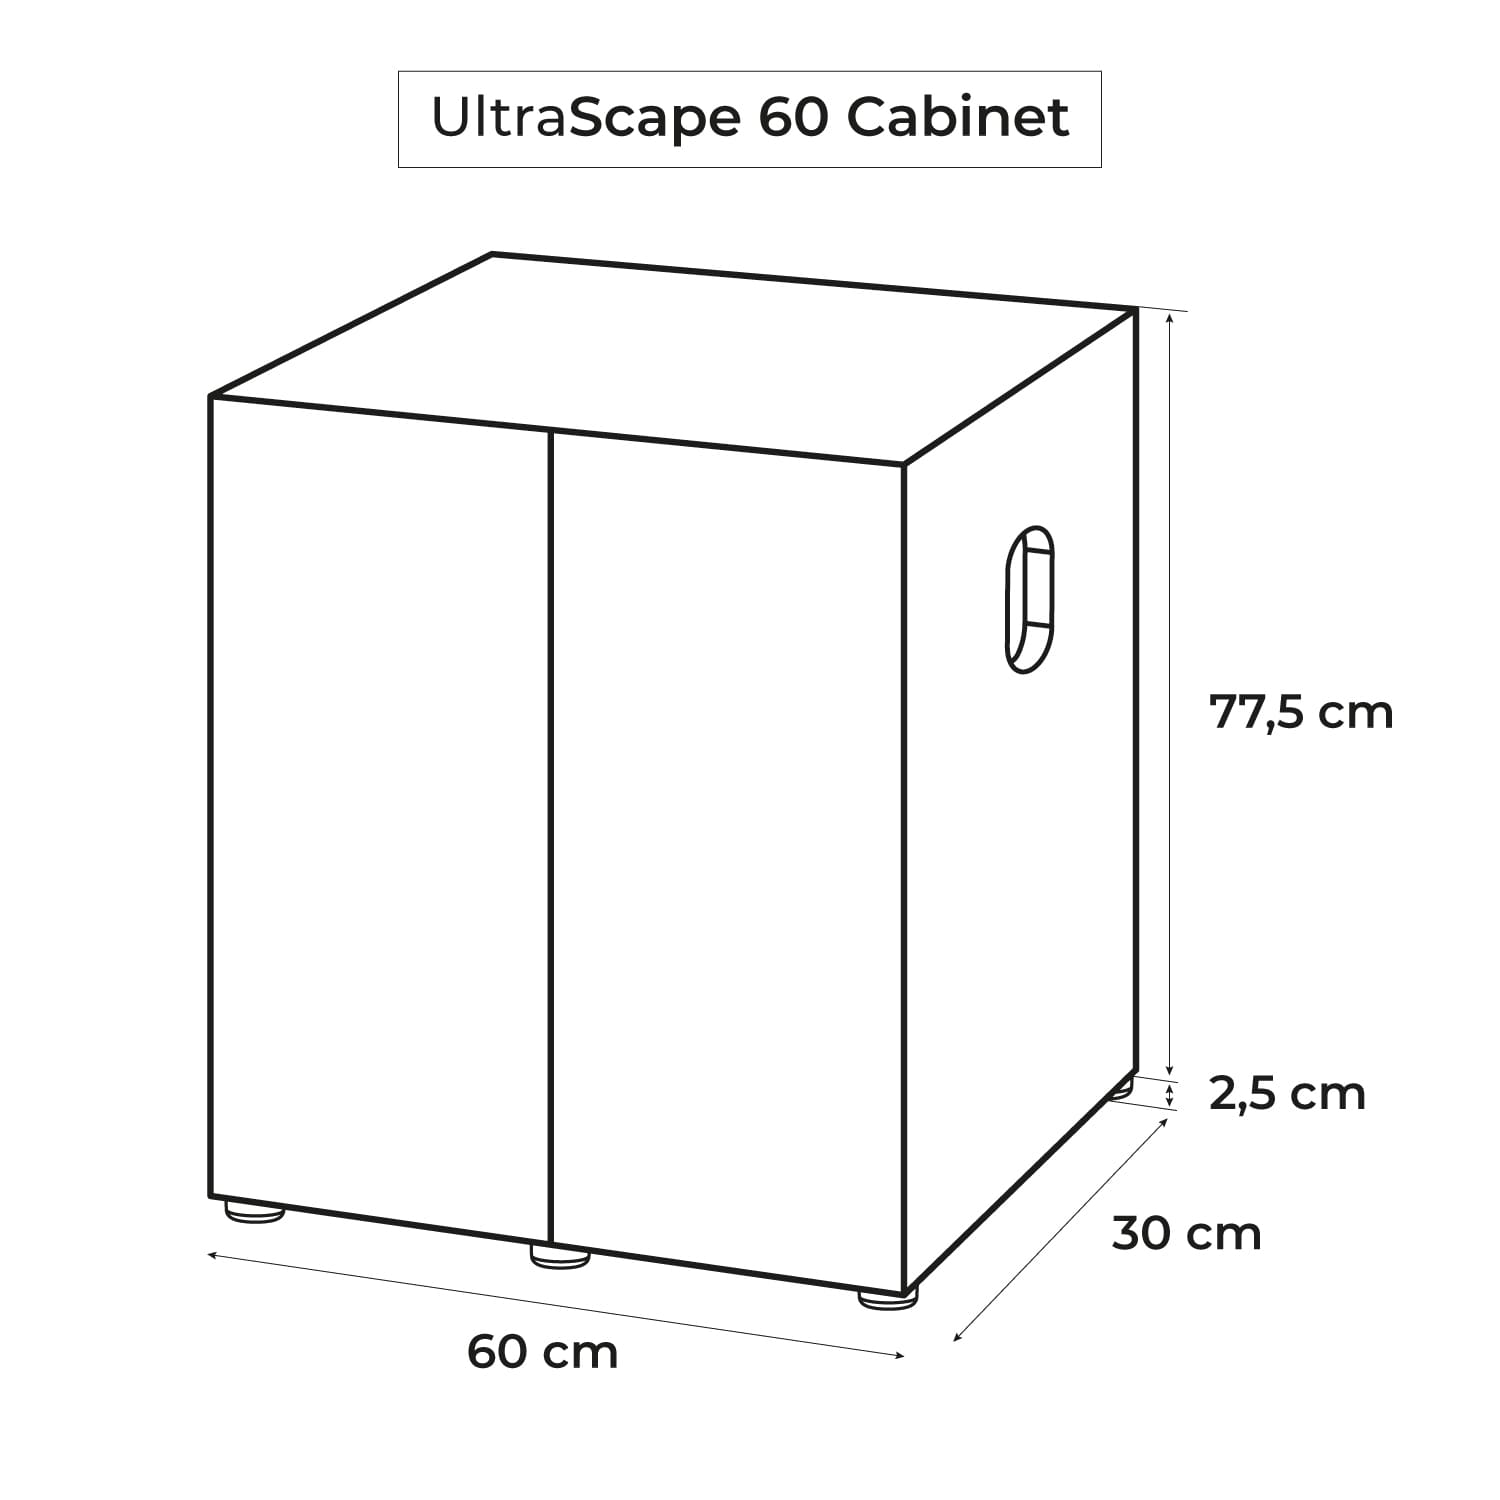 aquael-meuble-ultrascape-60-snow-dimensions-60-x-30-x-80-cm-pour-aquarium-5